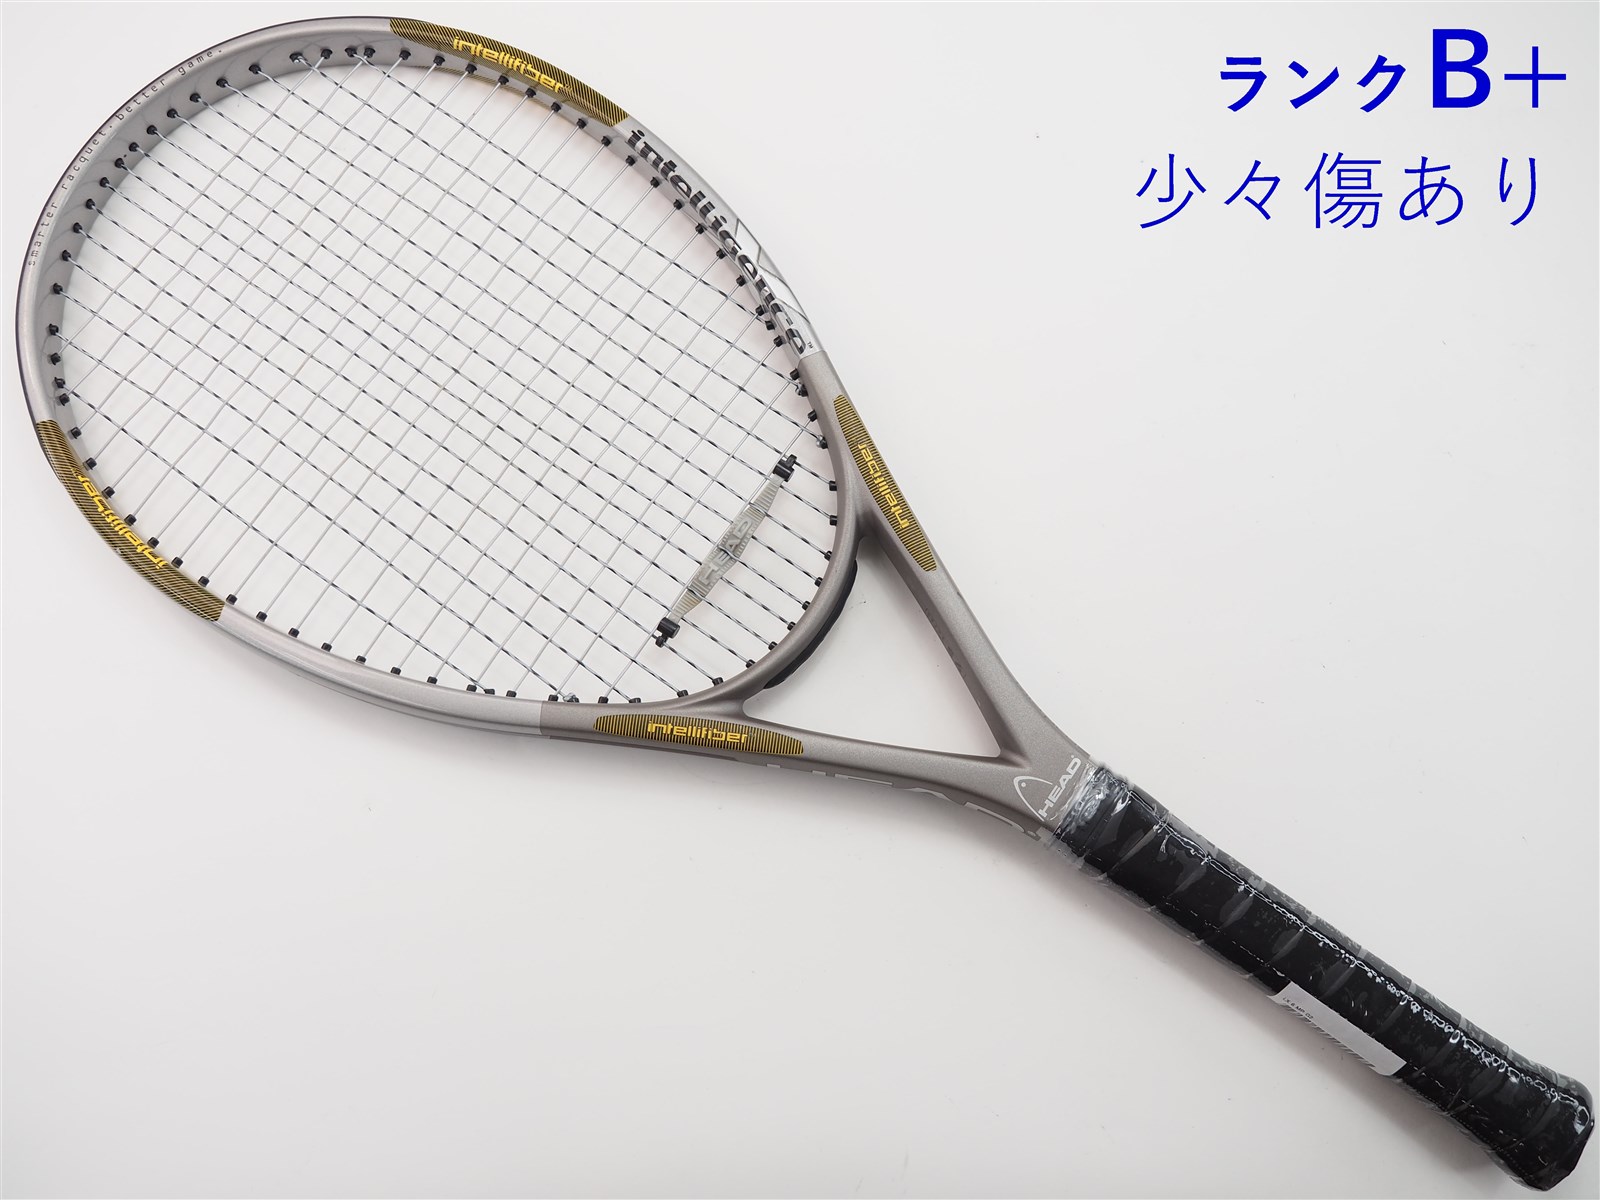 テニスラケット ヘッド アイ エックス 6 MP (G2)HEAD i.X 6 MP-